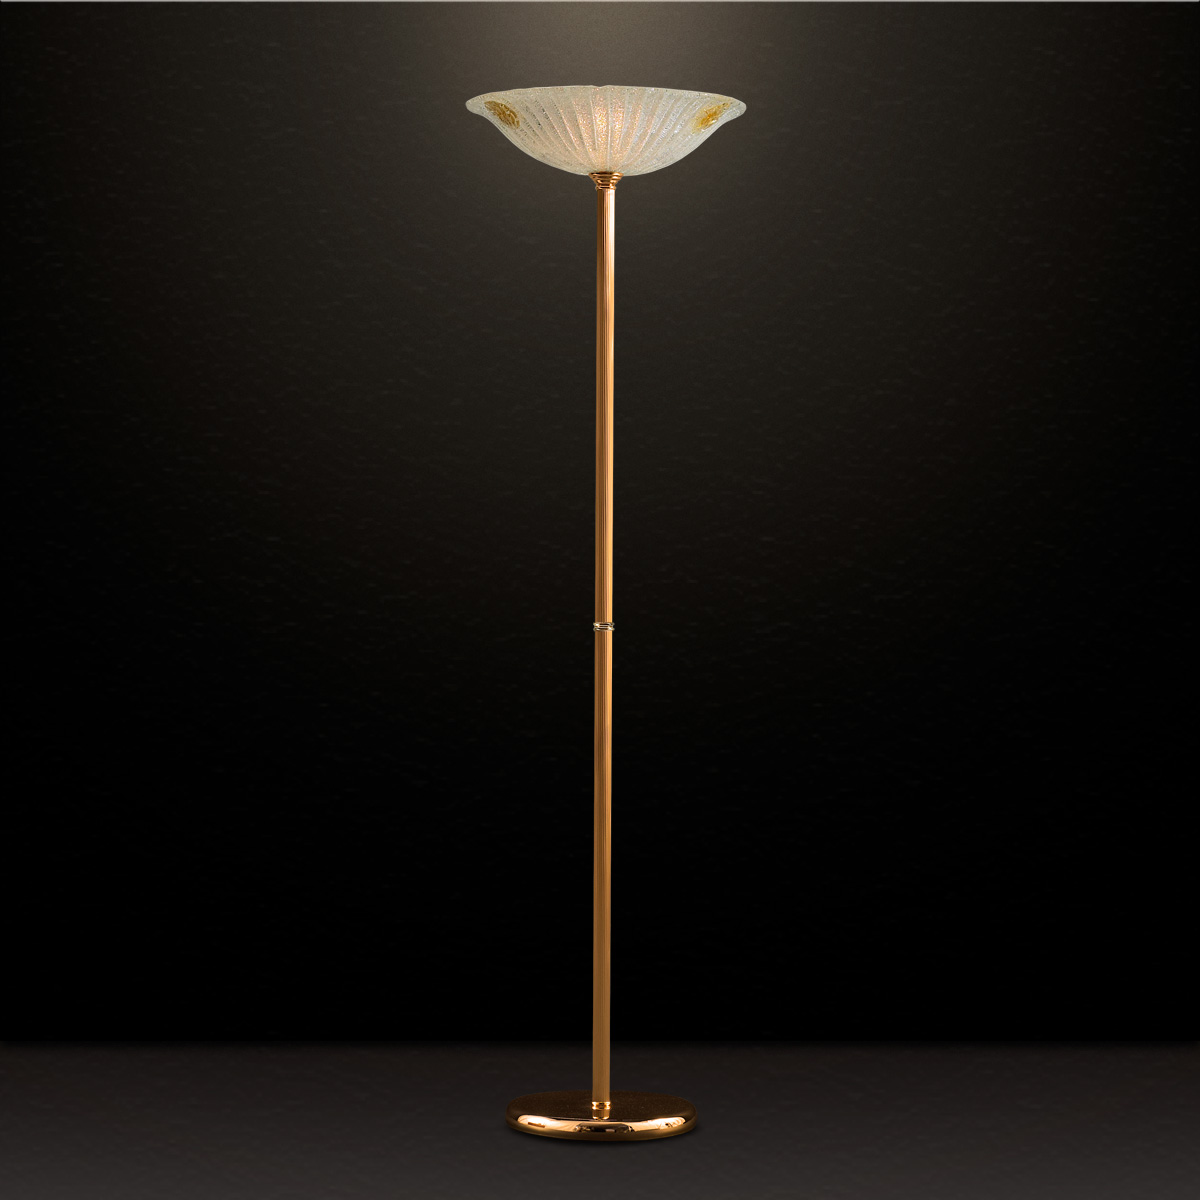 Κλασικό επιδαπέδιο φωτιστικό με κρύσταλλο Μουράνο ΦΥΛΛΟ classic Murano crystal floor lamp